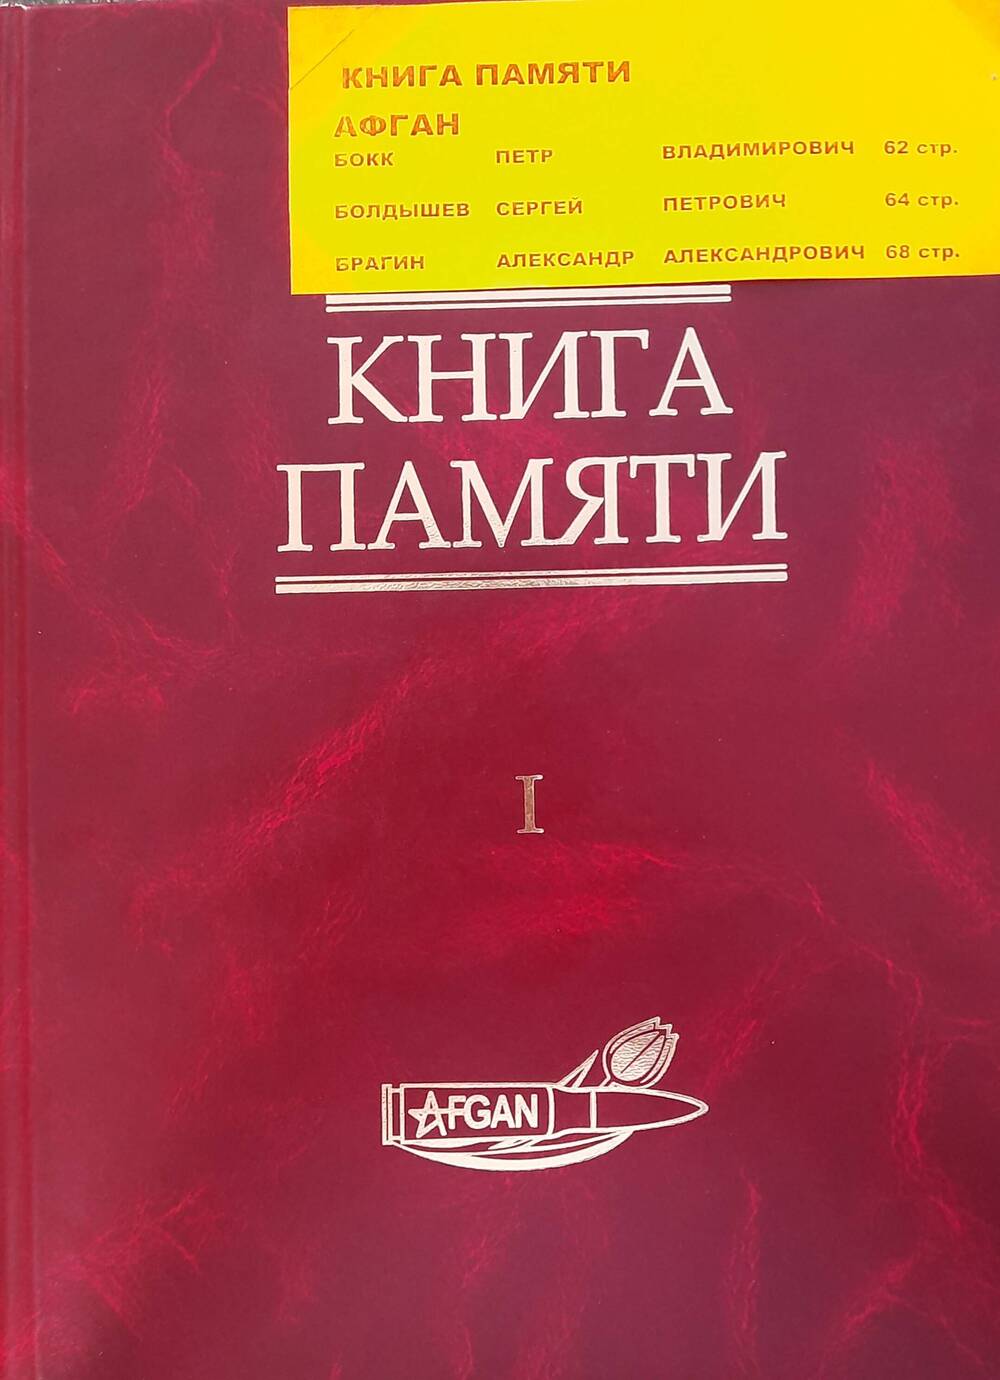 Книга  памяти в двух томах (Алтай) том первый. Афган  382 страницы.